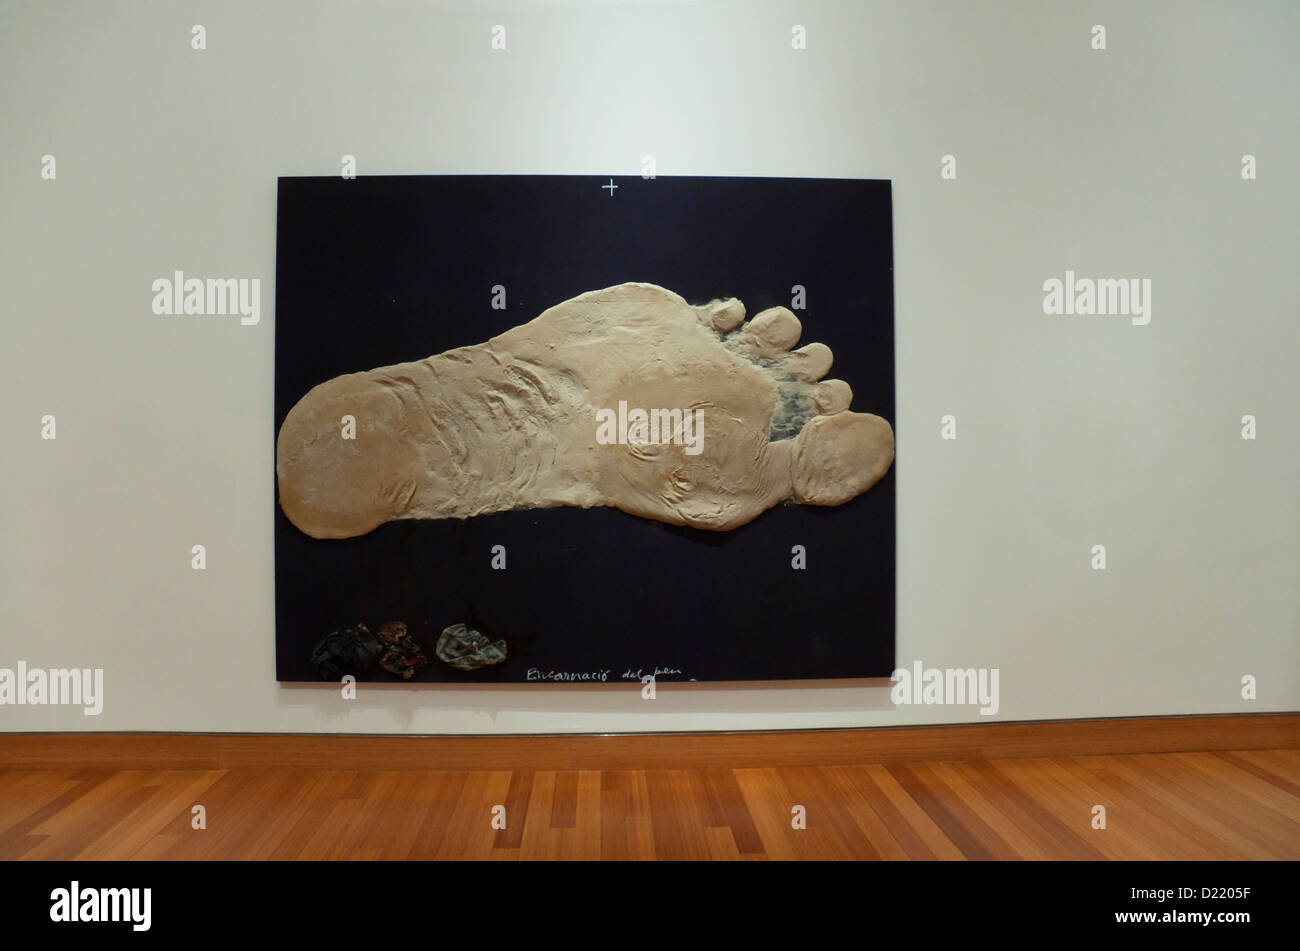 Grande peinture d'art moderne d'un pied humain accroché dans un musée. Banque D'Images